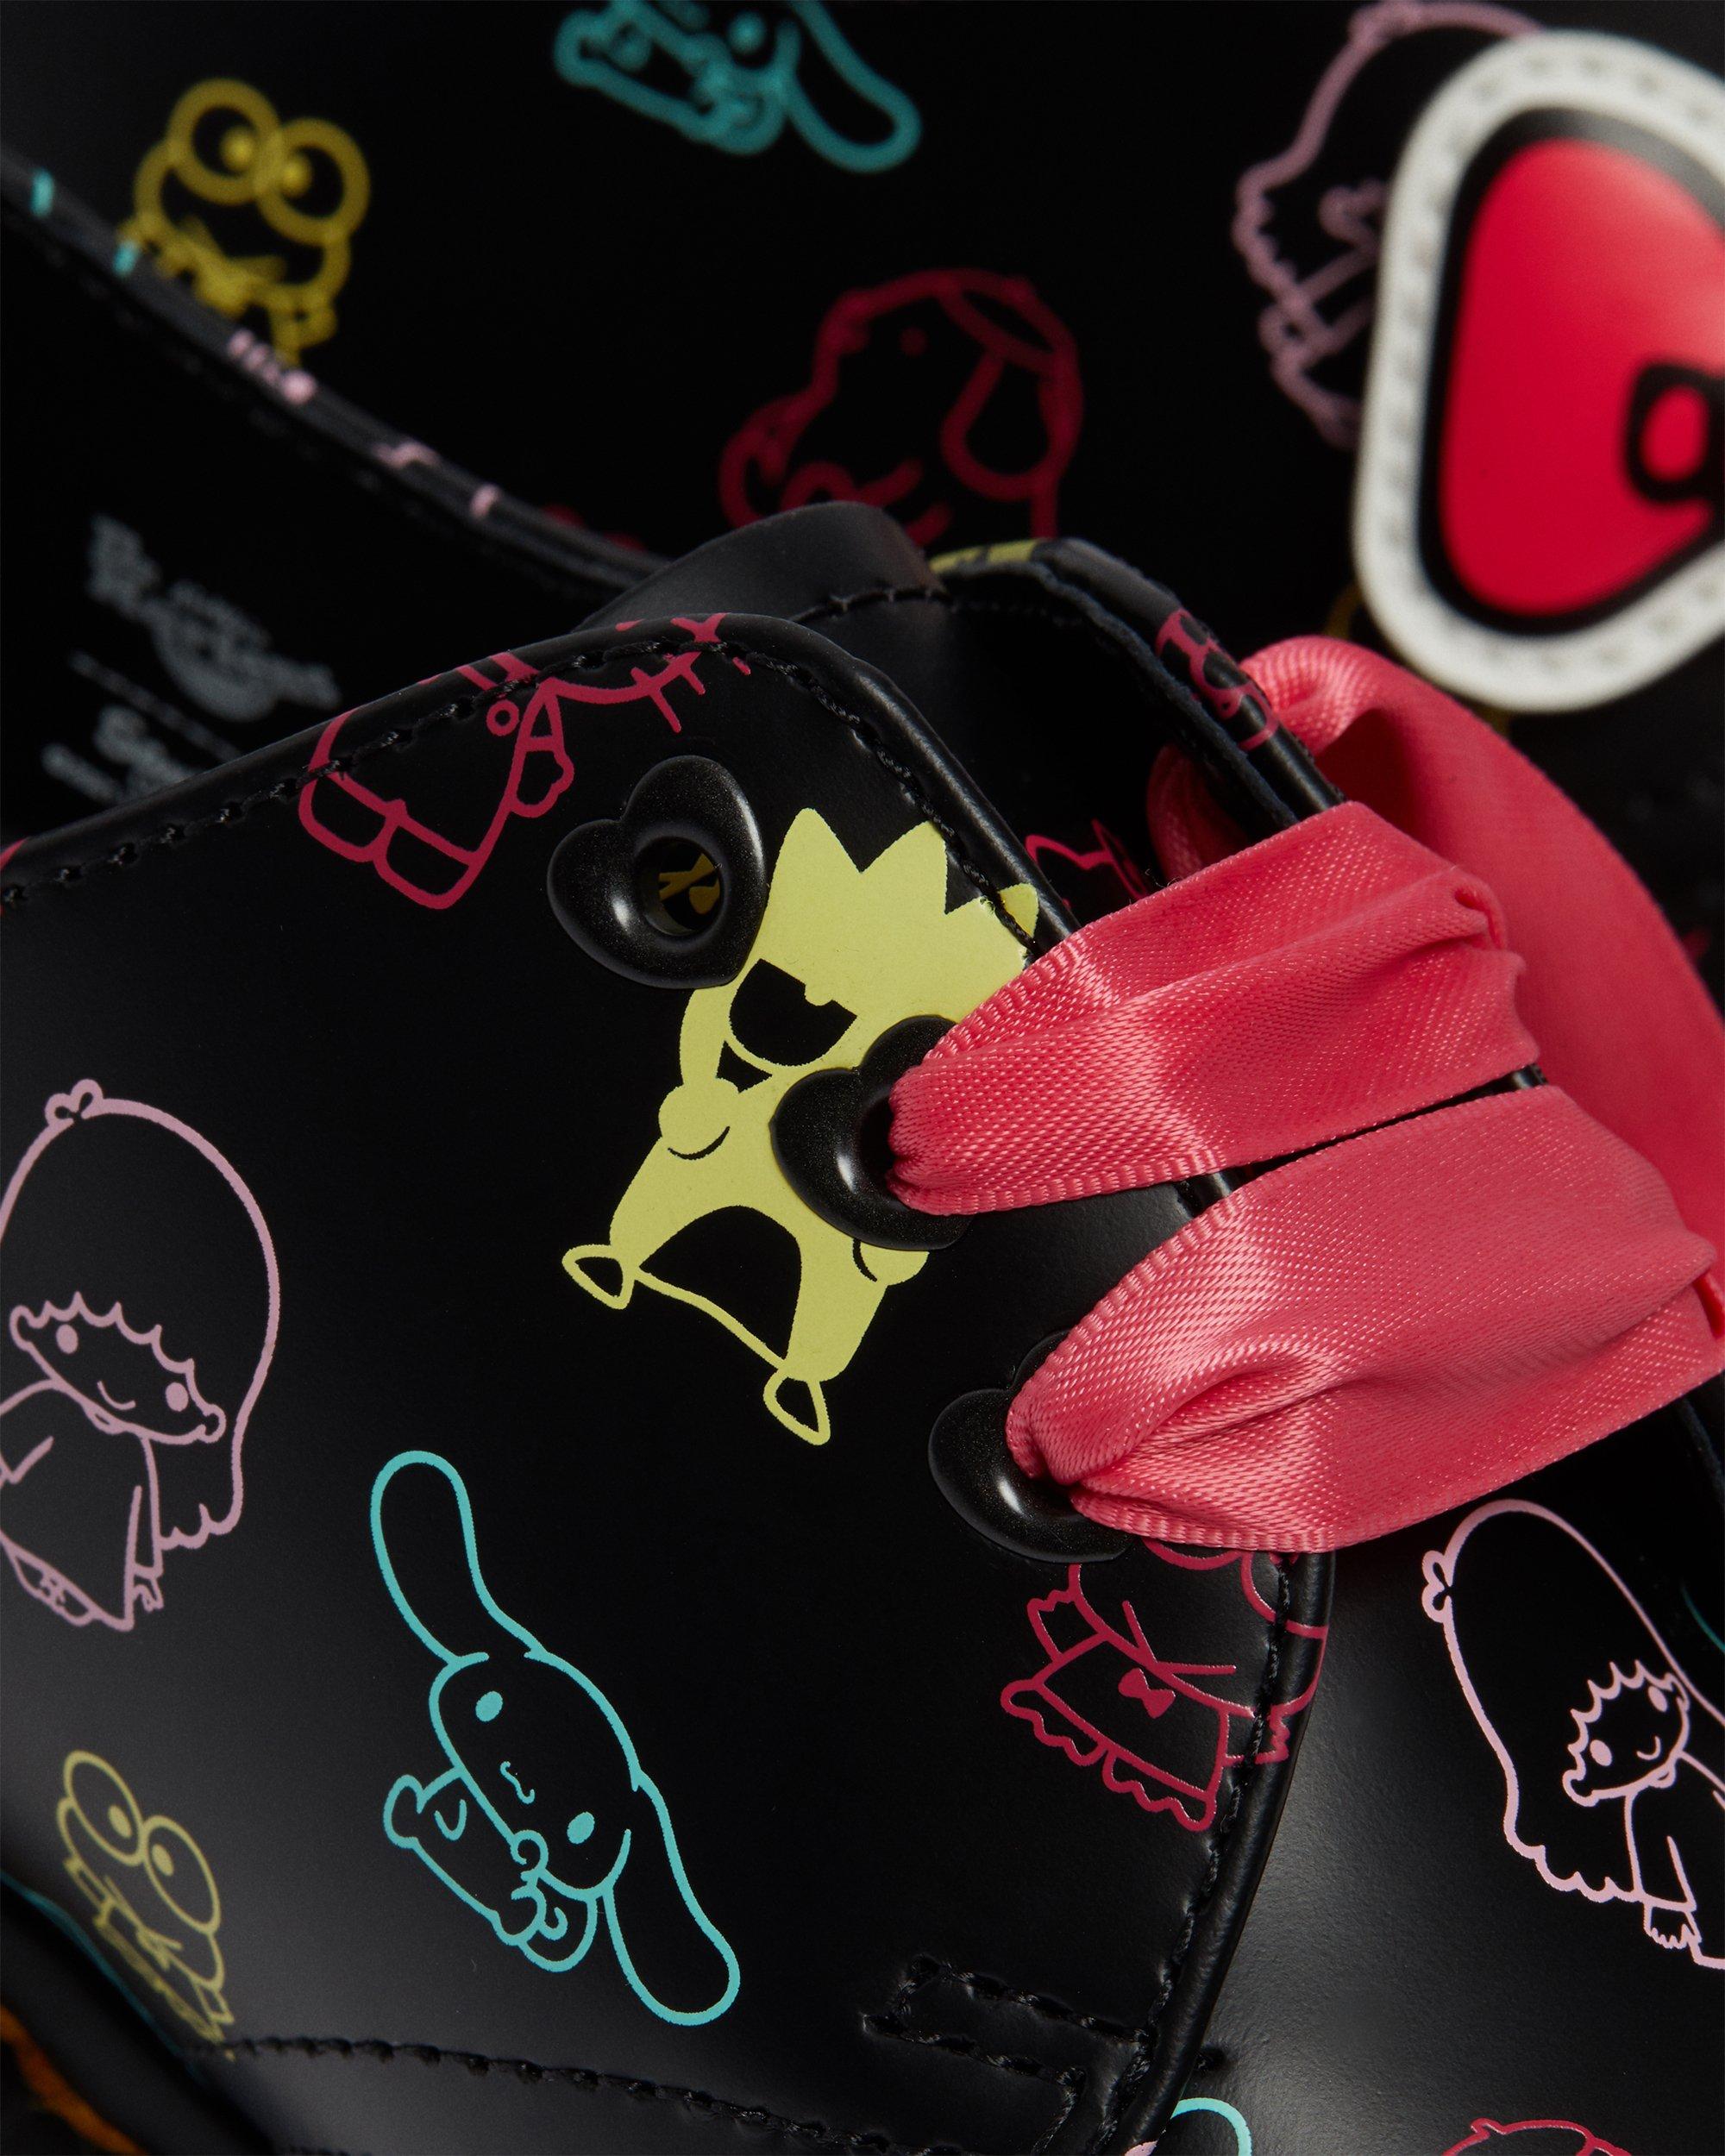 Musta+Monivärinen 1461 Hello Kitty & Friends Leather Shoes 